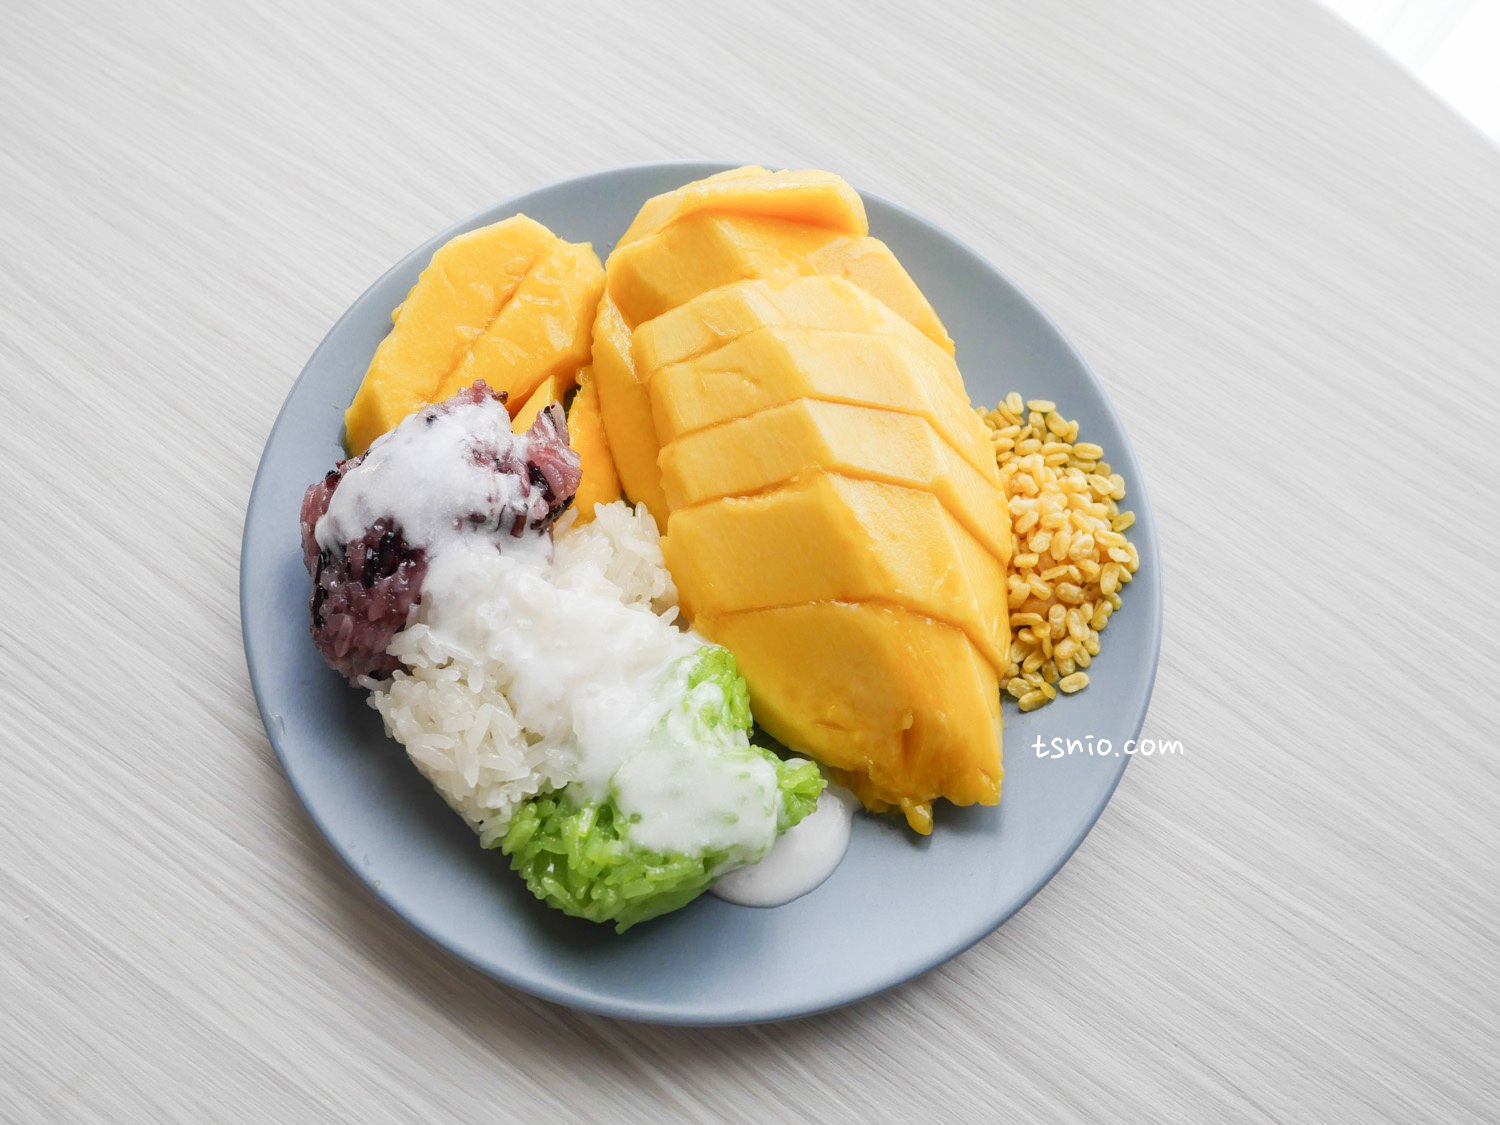 曼谷美食Mae Varee芒果糯米：傳說中曼谷最好吃也最貴的芒果糯米飯，Thong Lor區道地小吃